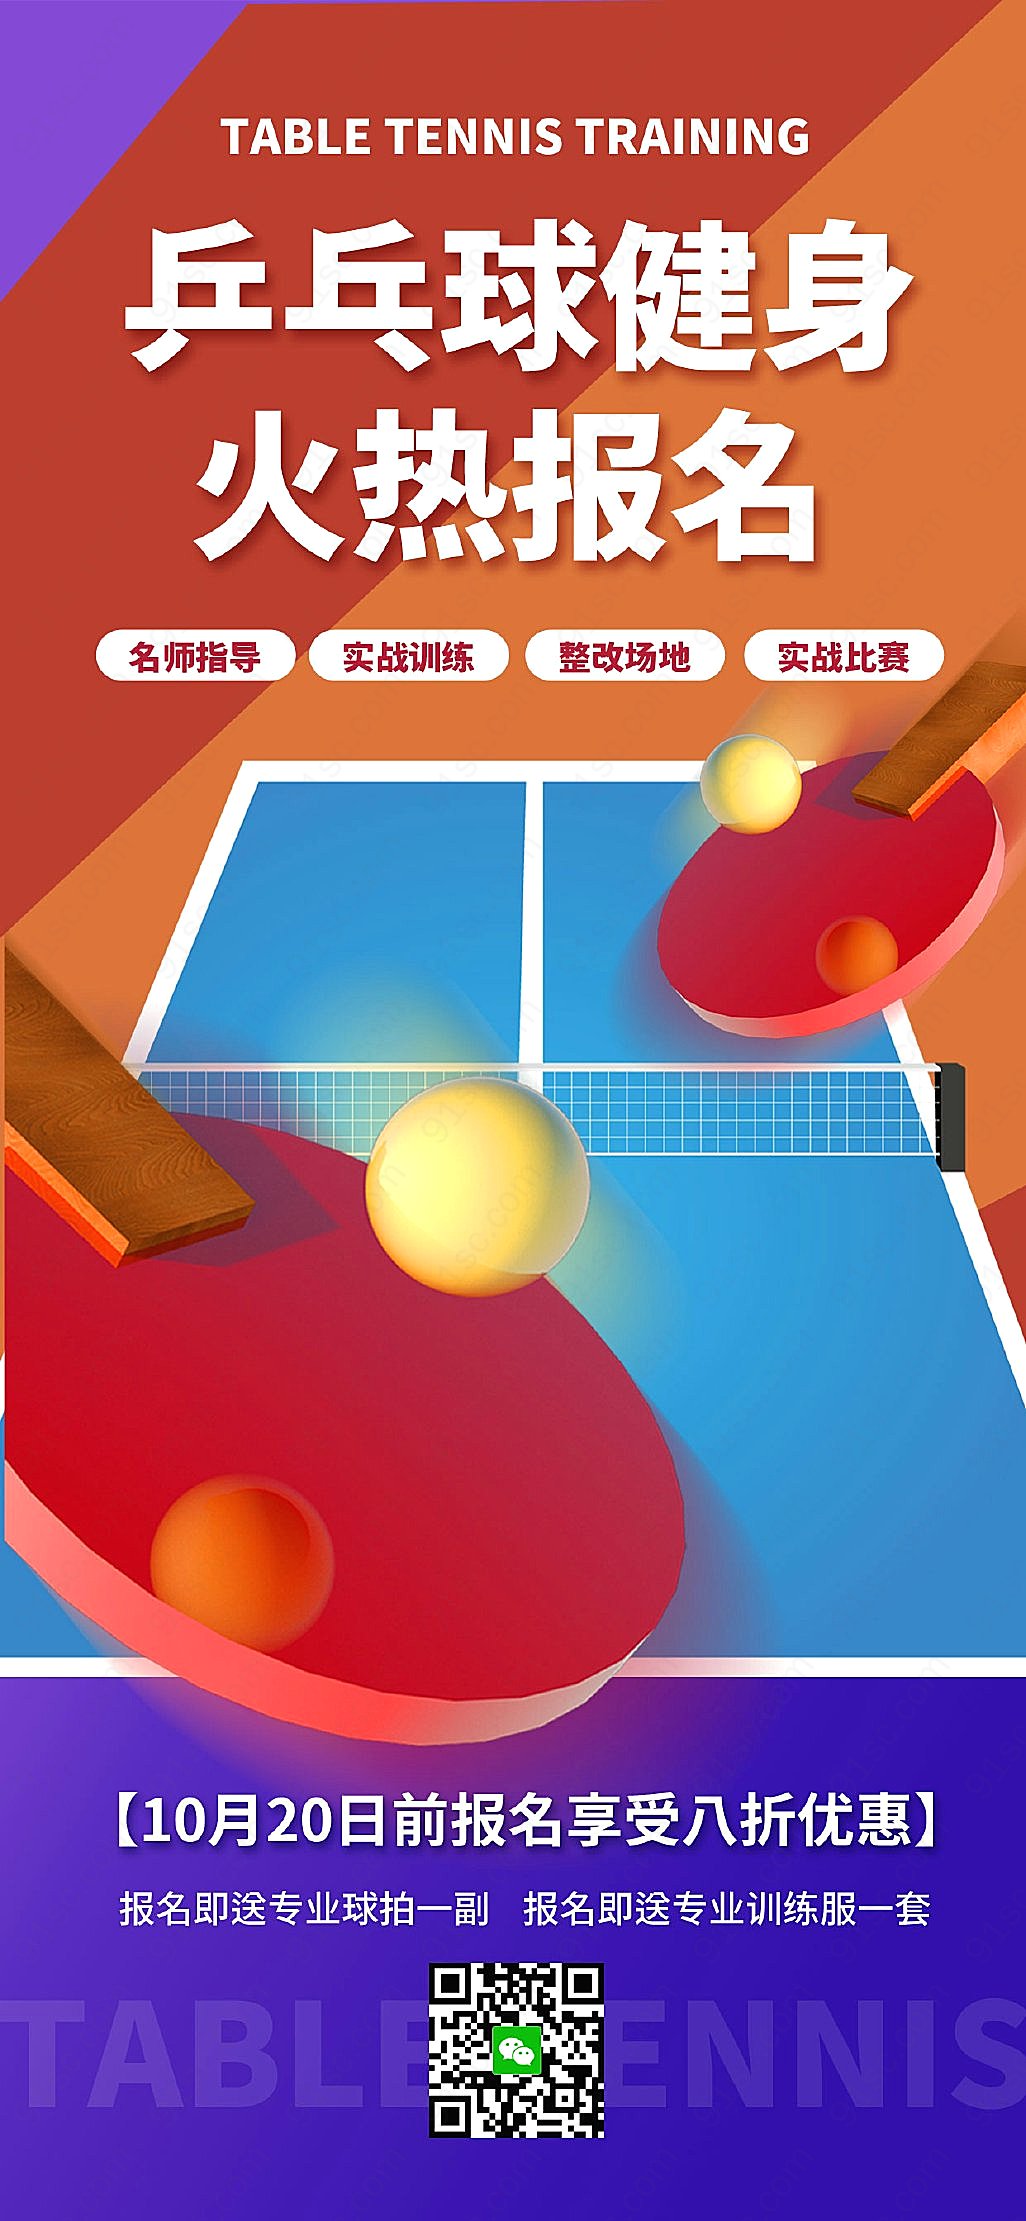 扁平风乒乓球训练课程打造无敌球技成为乒乓球王者手机海报手机营销图新媒体用图下载